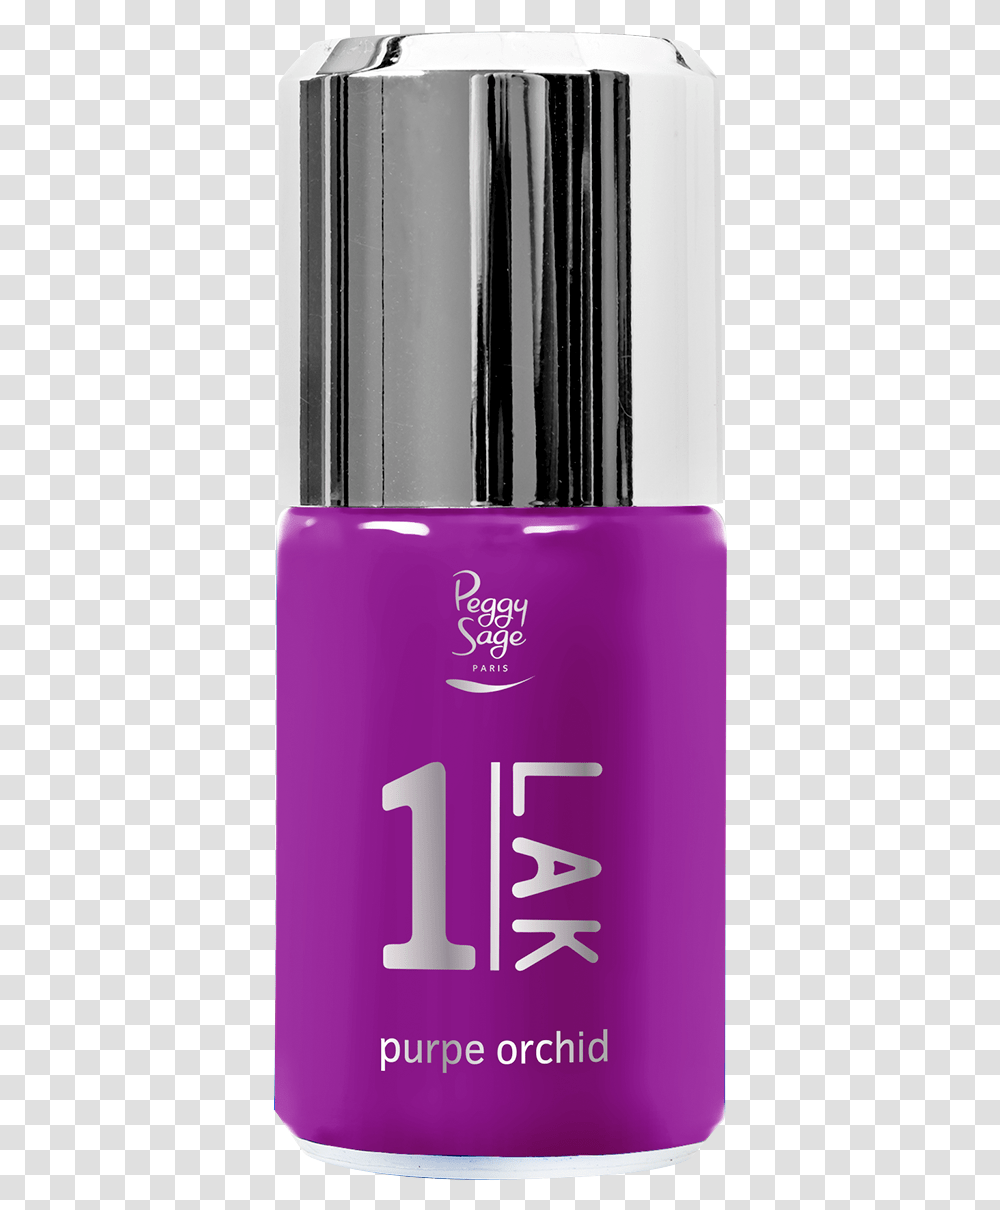 Purple Orchid Peggy Sage 1 Lak, Cosmetics, Bottle, Perfume Transparent Png